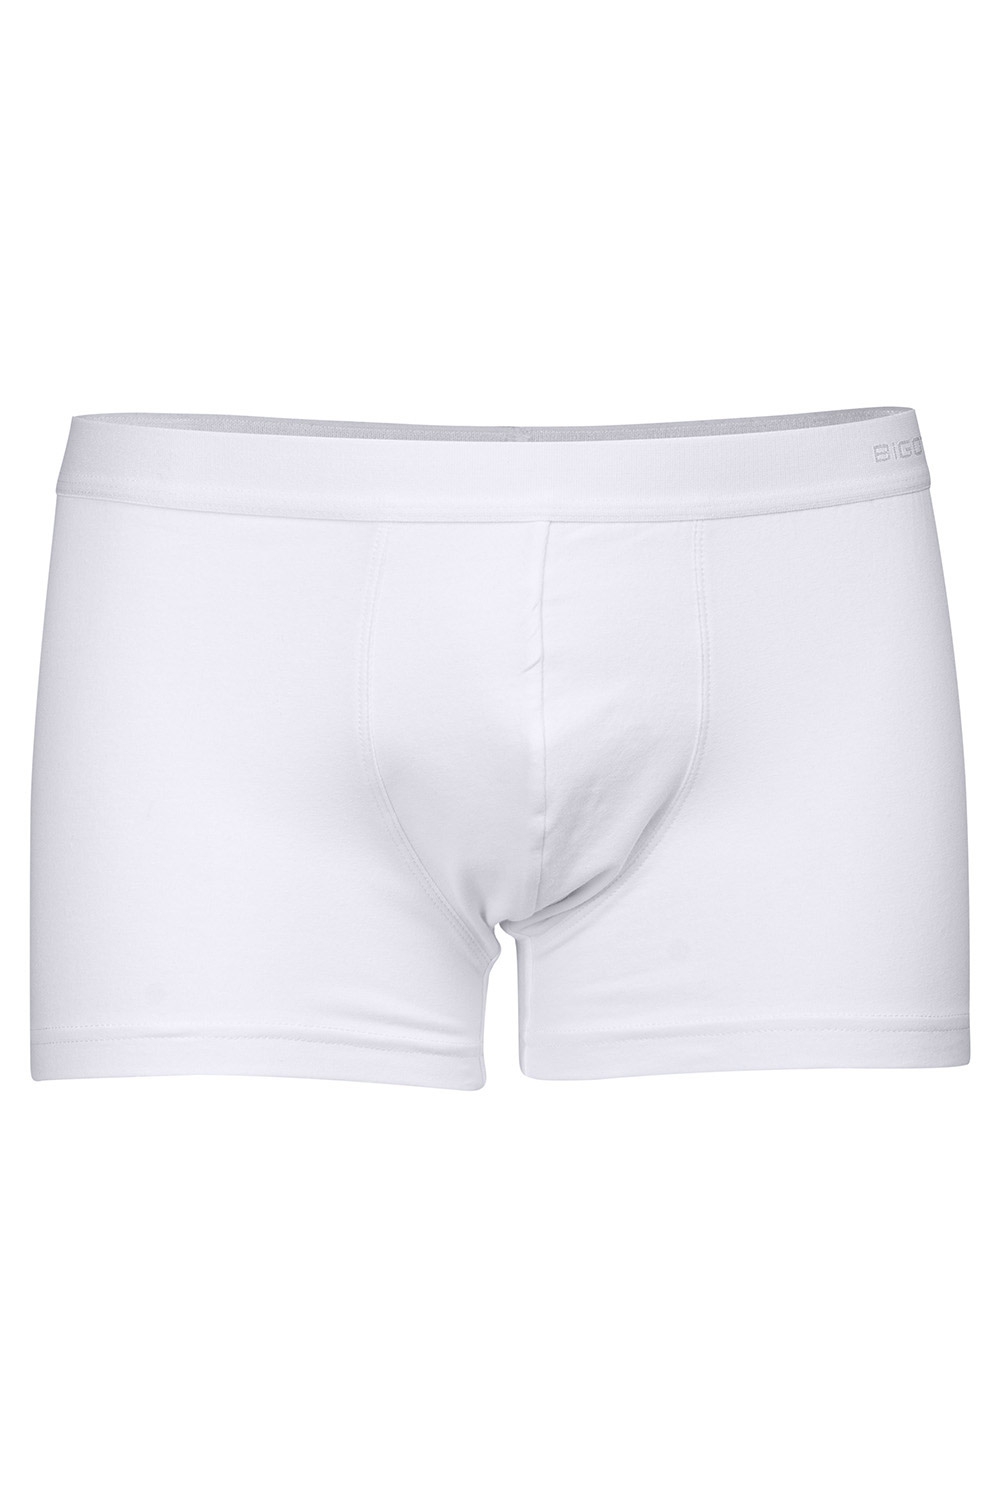 White underwear 0